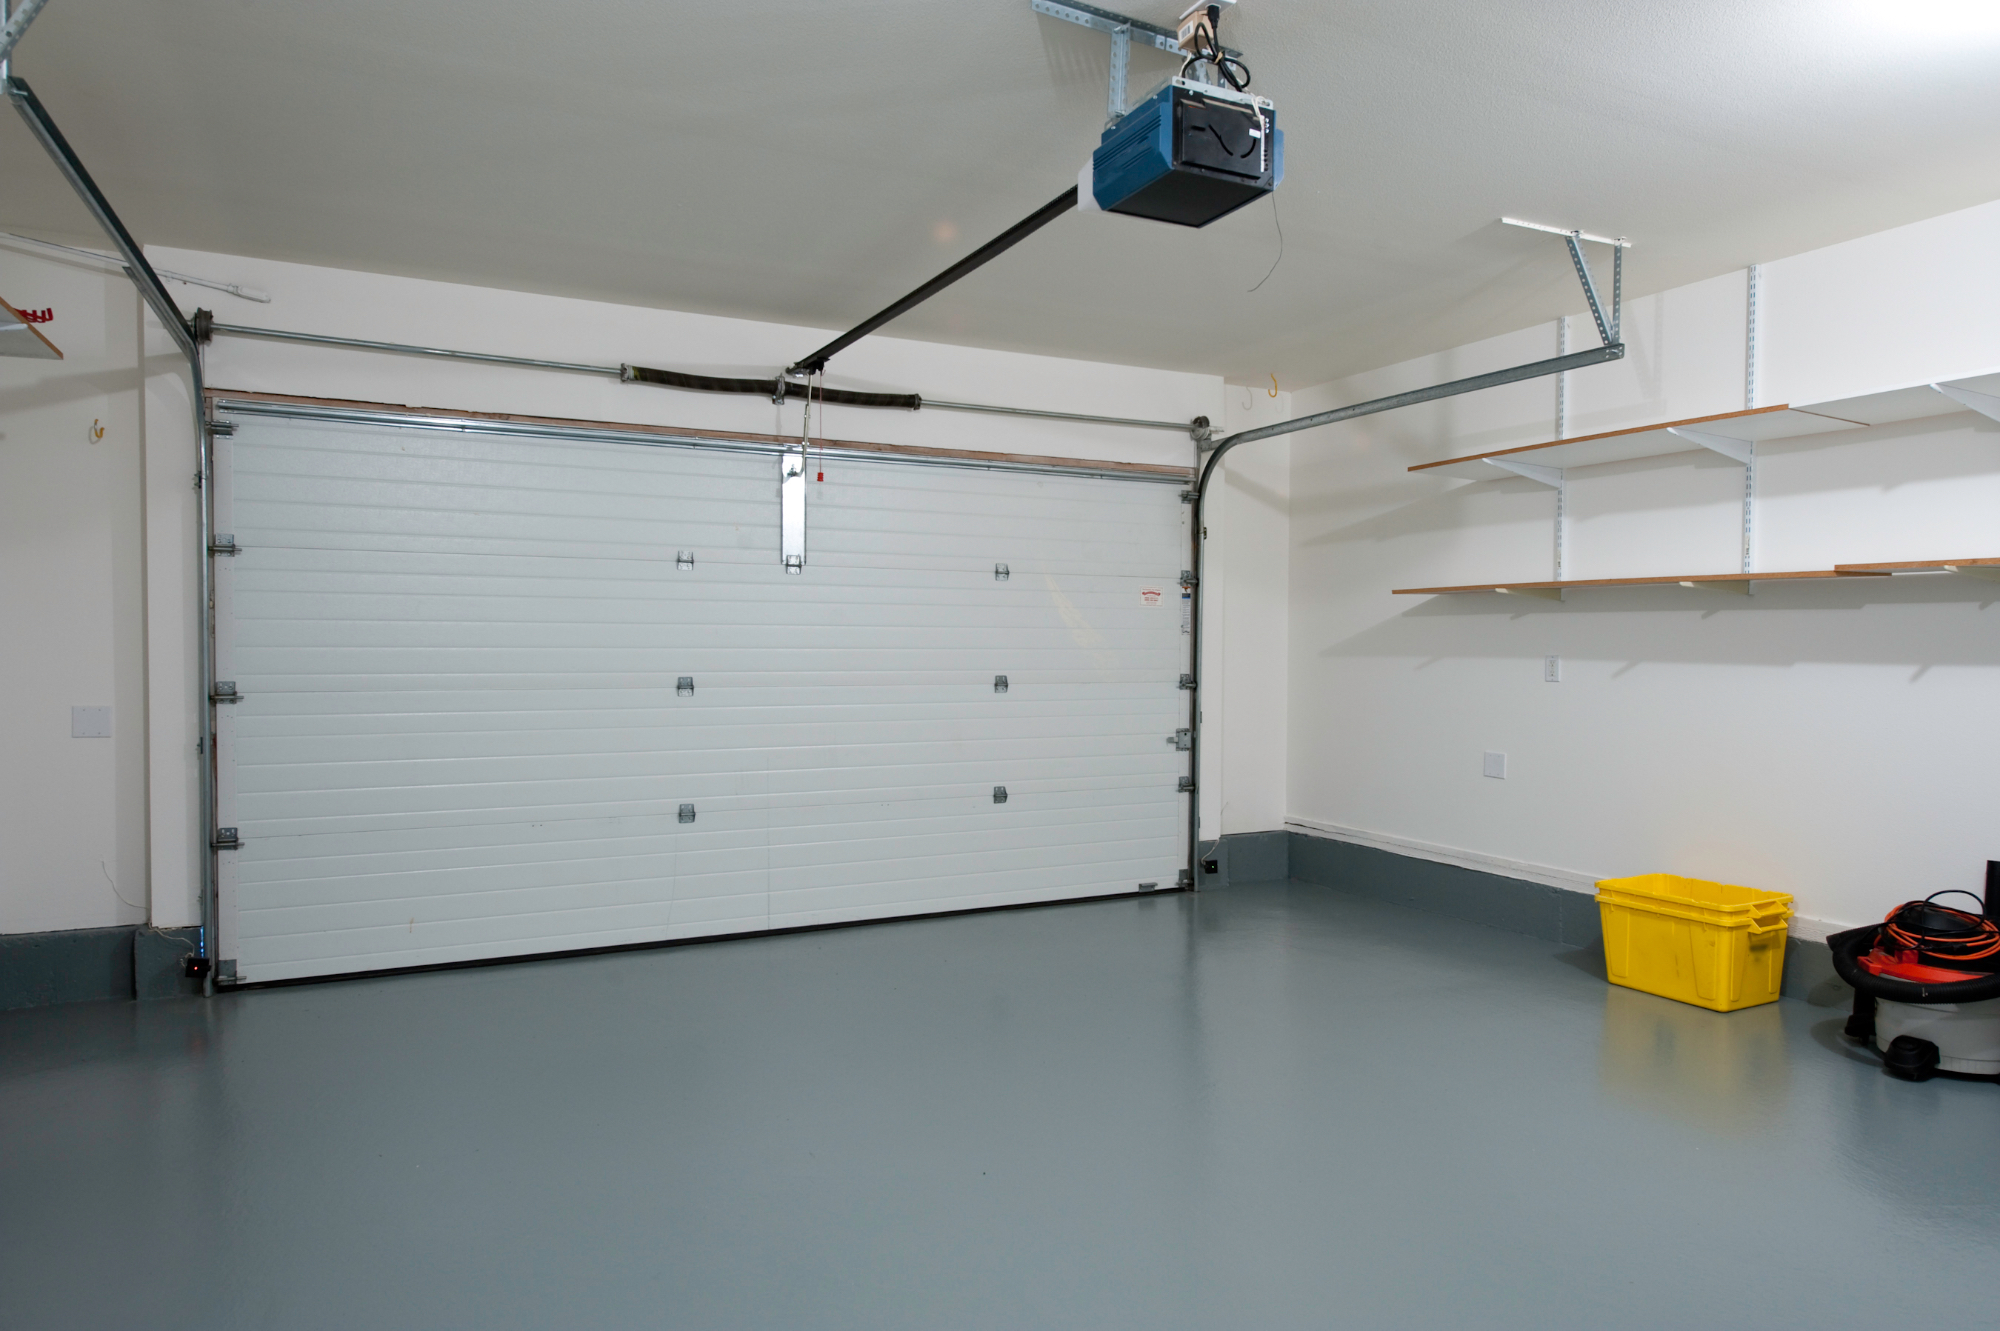 Katera garažna vrata izbrati za vašo novo garažo